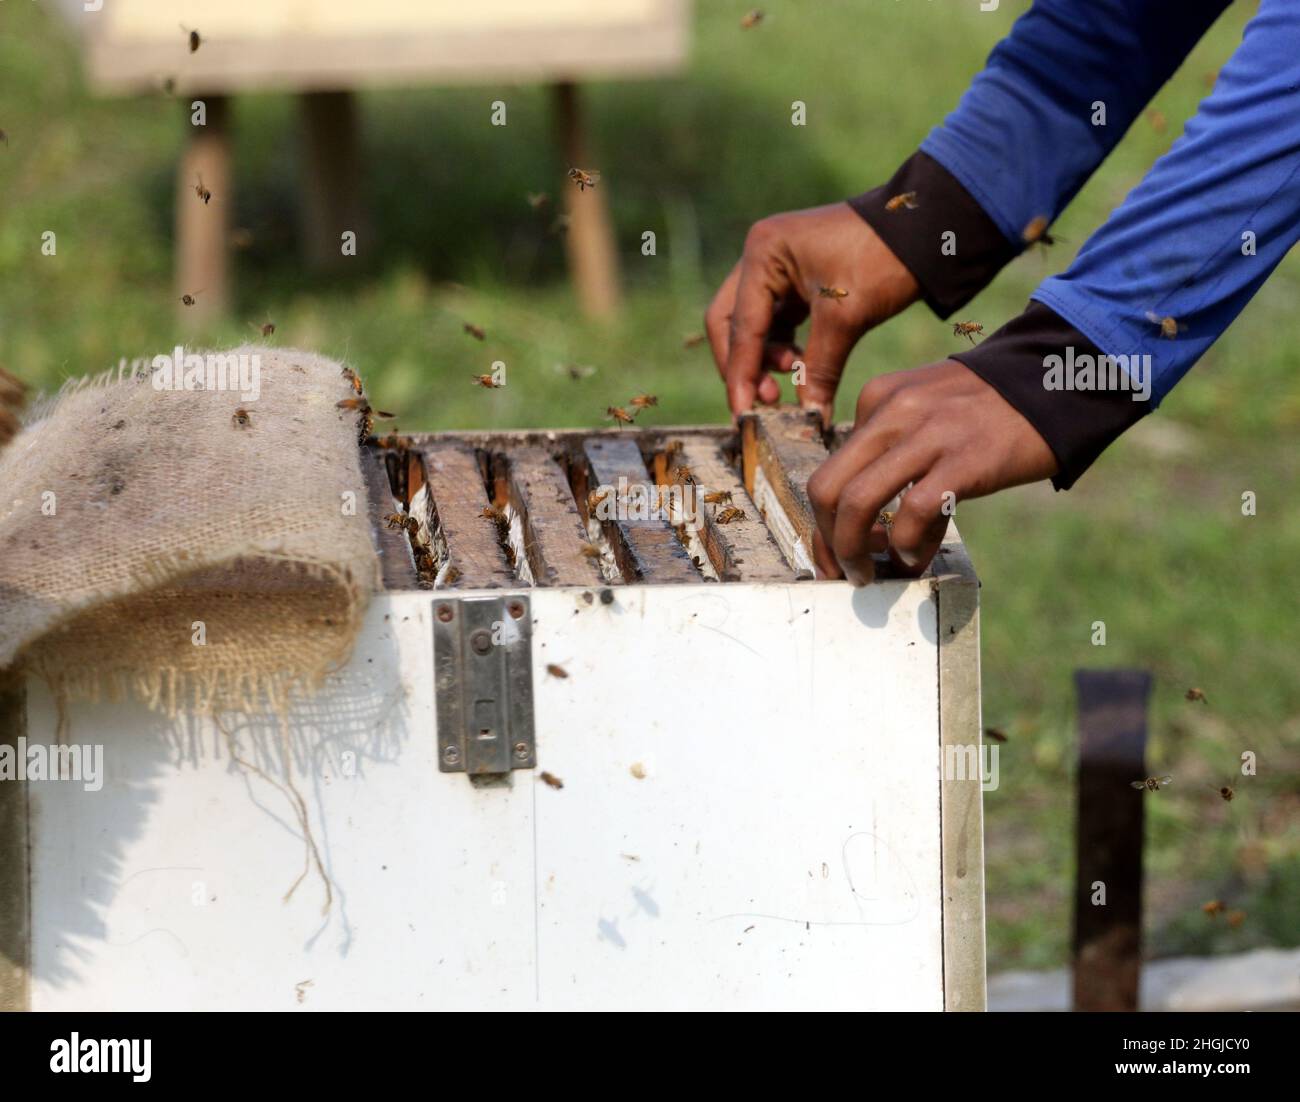 Apiculteurs lors de la collecte de nid d'abeille de la boîte spéciale pour extraire le miel produit par les abeilles dans un champ de Munshigonj.Selon le Banglad Banque D'Images